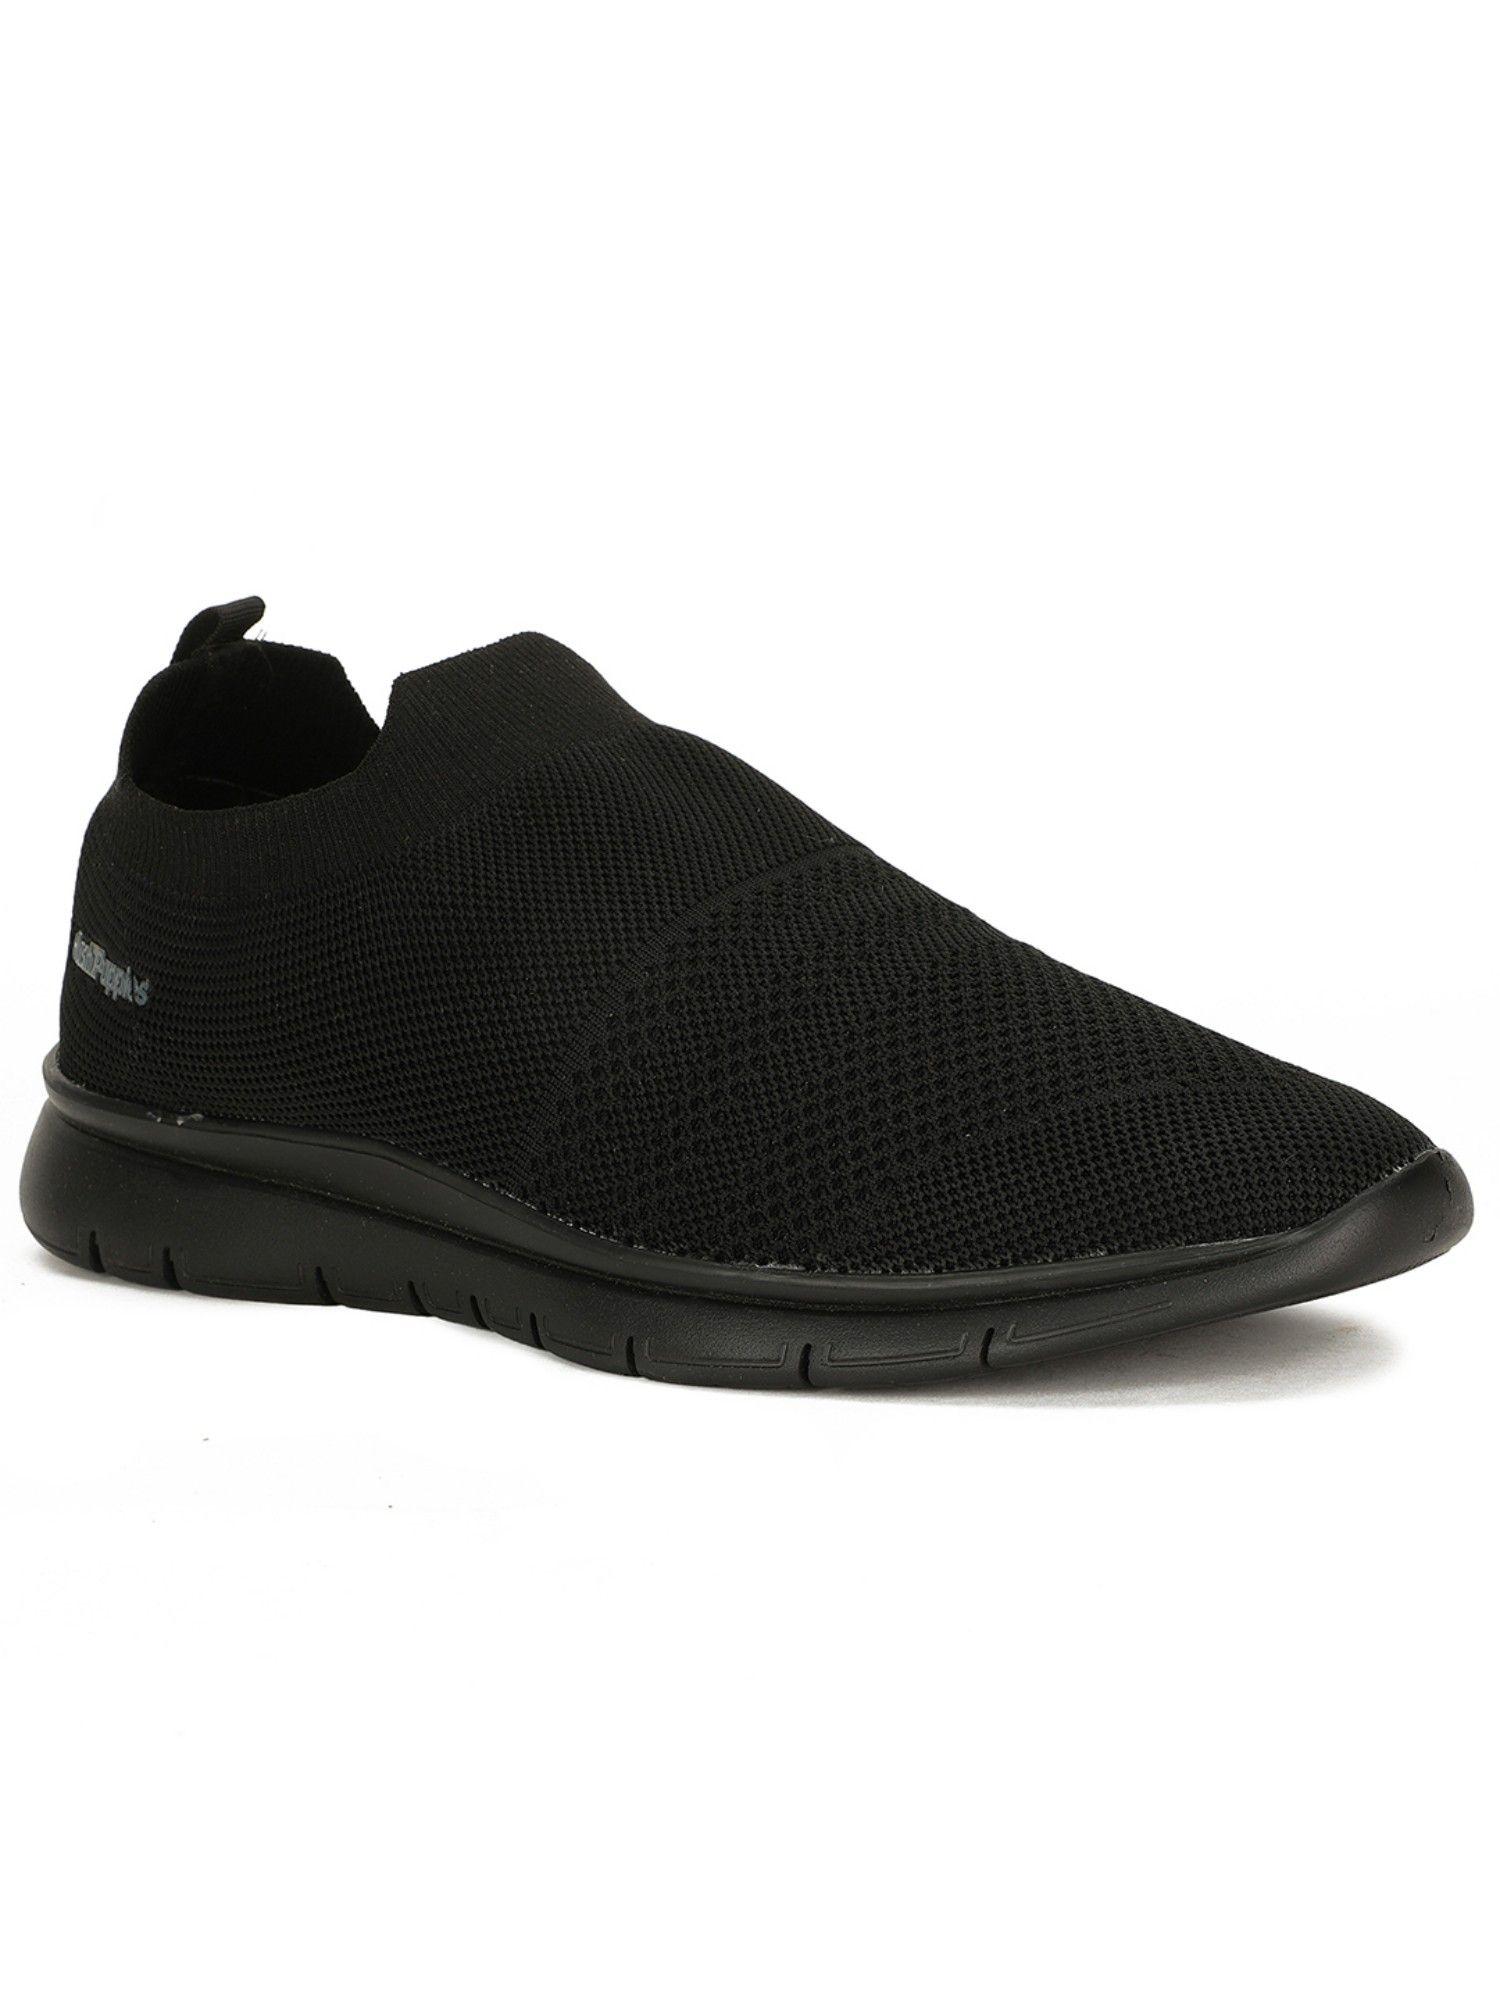 sneakers-for-men-(black)